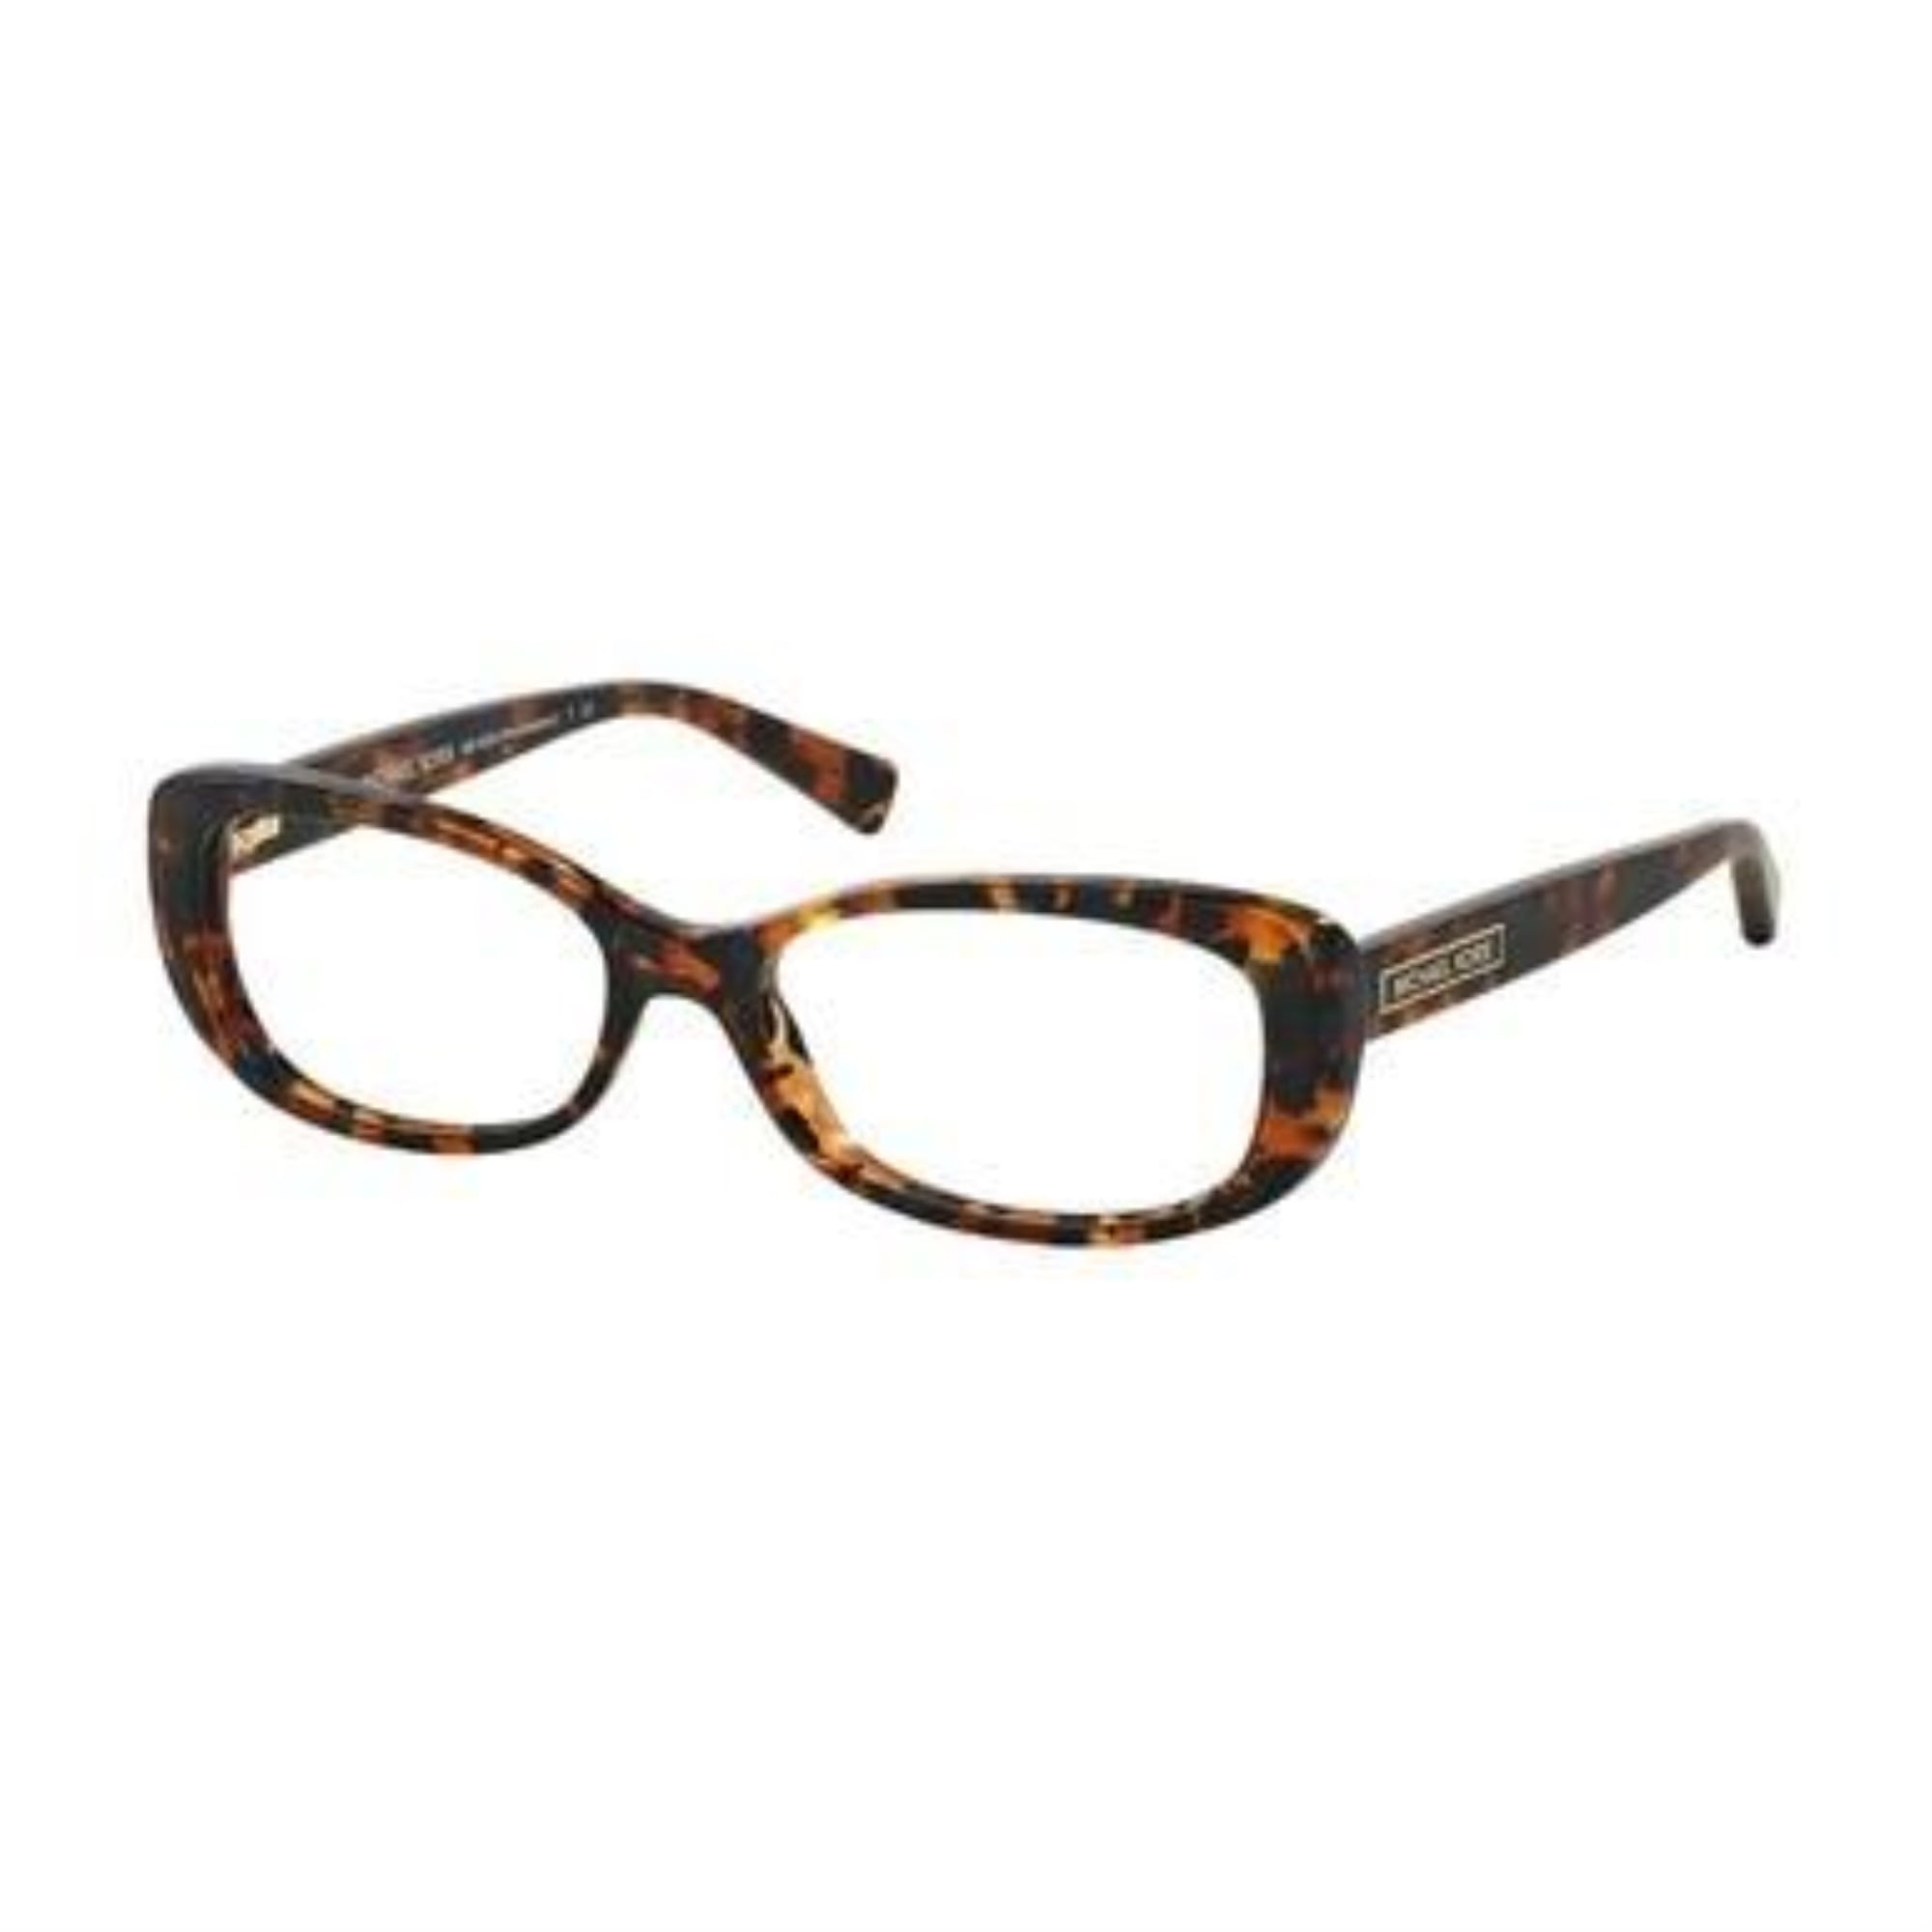 Michael Kors Mk 4023 3063 Provincetown Navy Tortoise Rectangular Women S Eyeglasses Navy